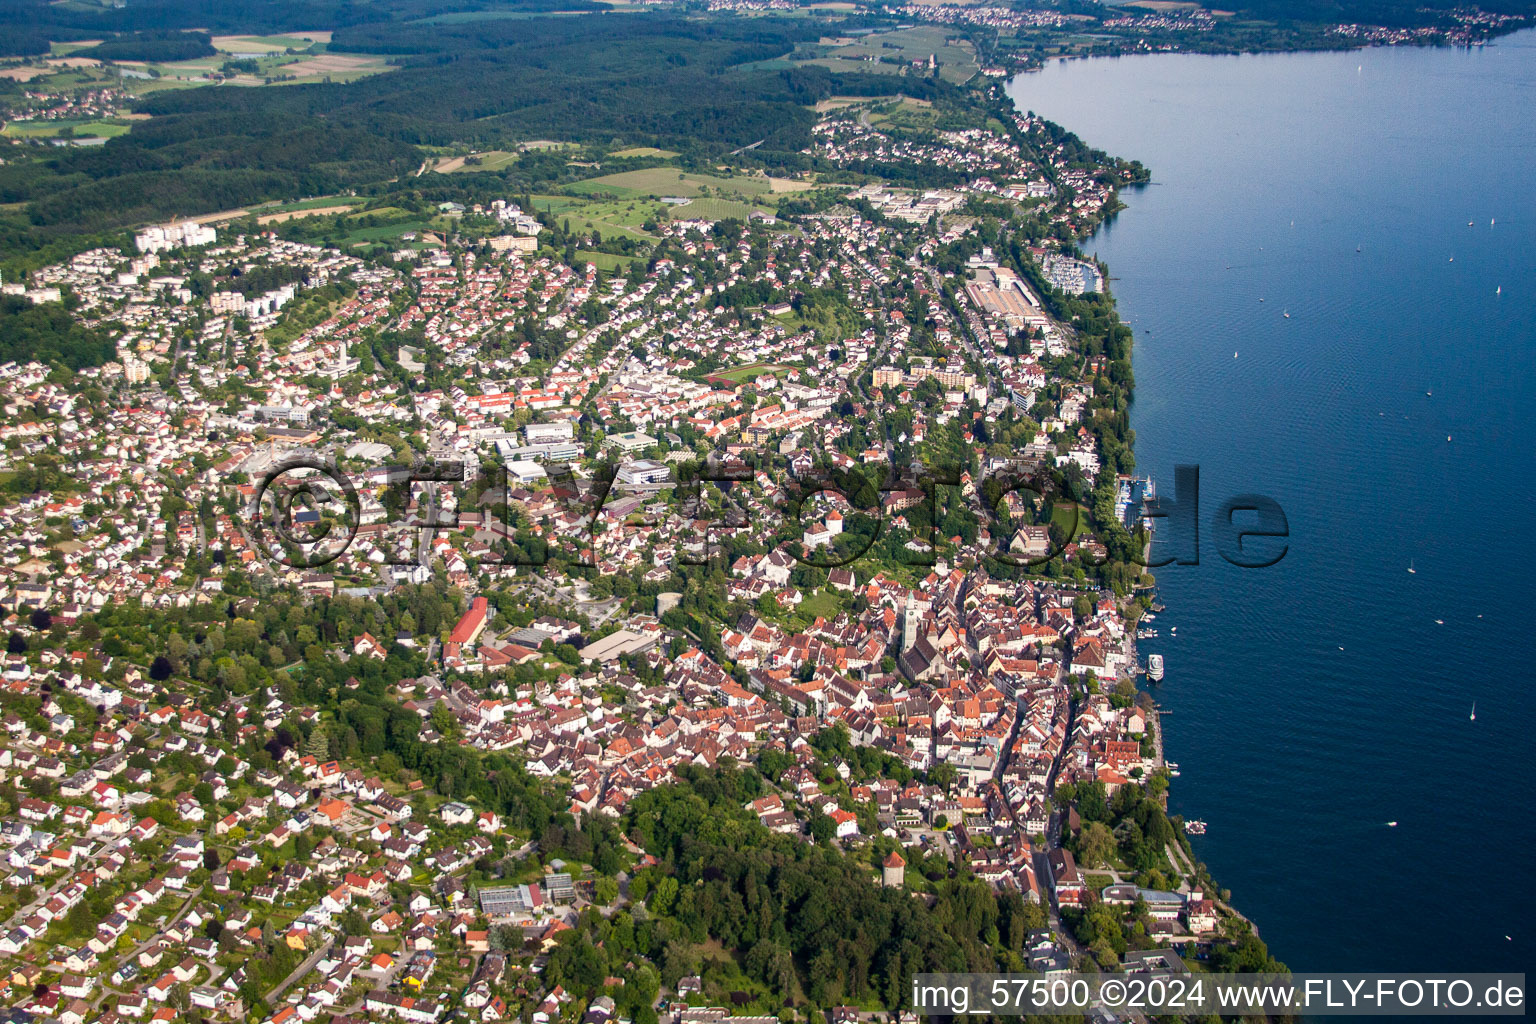 Luftbild von Stadt Überlingen am Ufer des Bodensee in Überlingen im Bundesland Baden-Württemberg, Deutschland